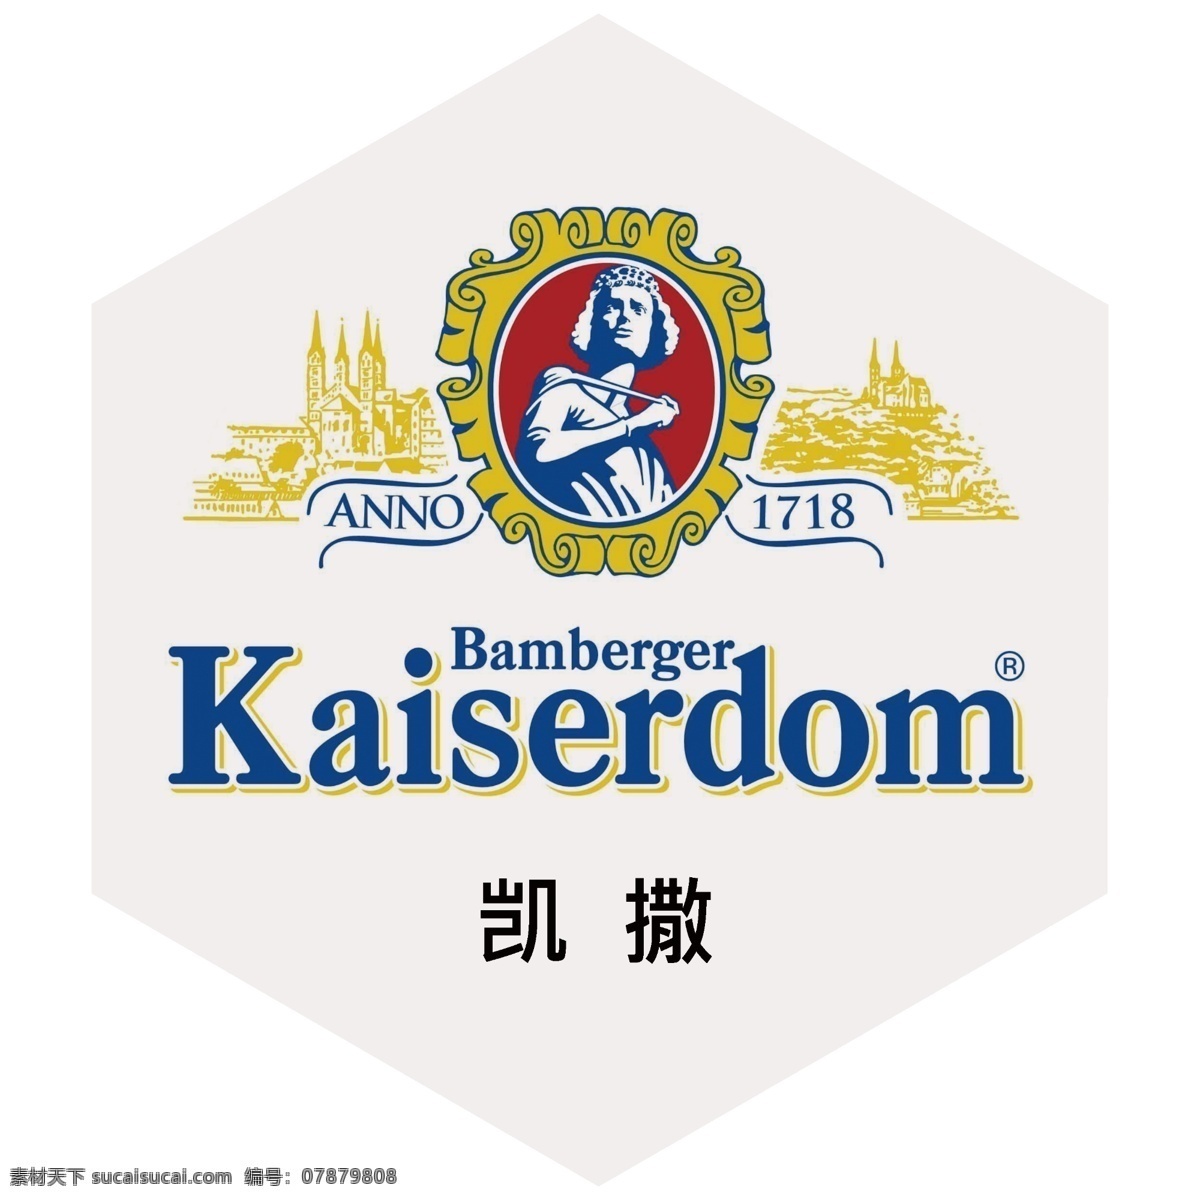 凯撒啤酒 kaiserdom 进口啤酒 啤酒 酒标志 酒标志专辑